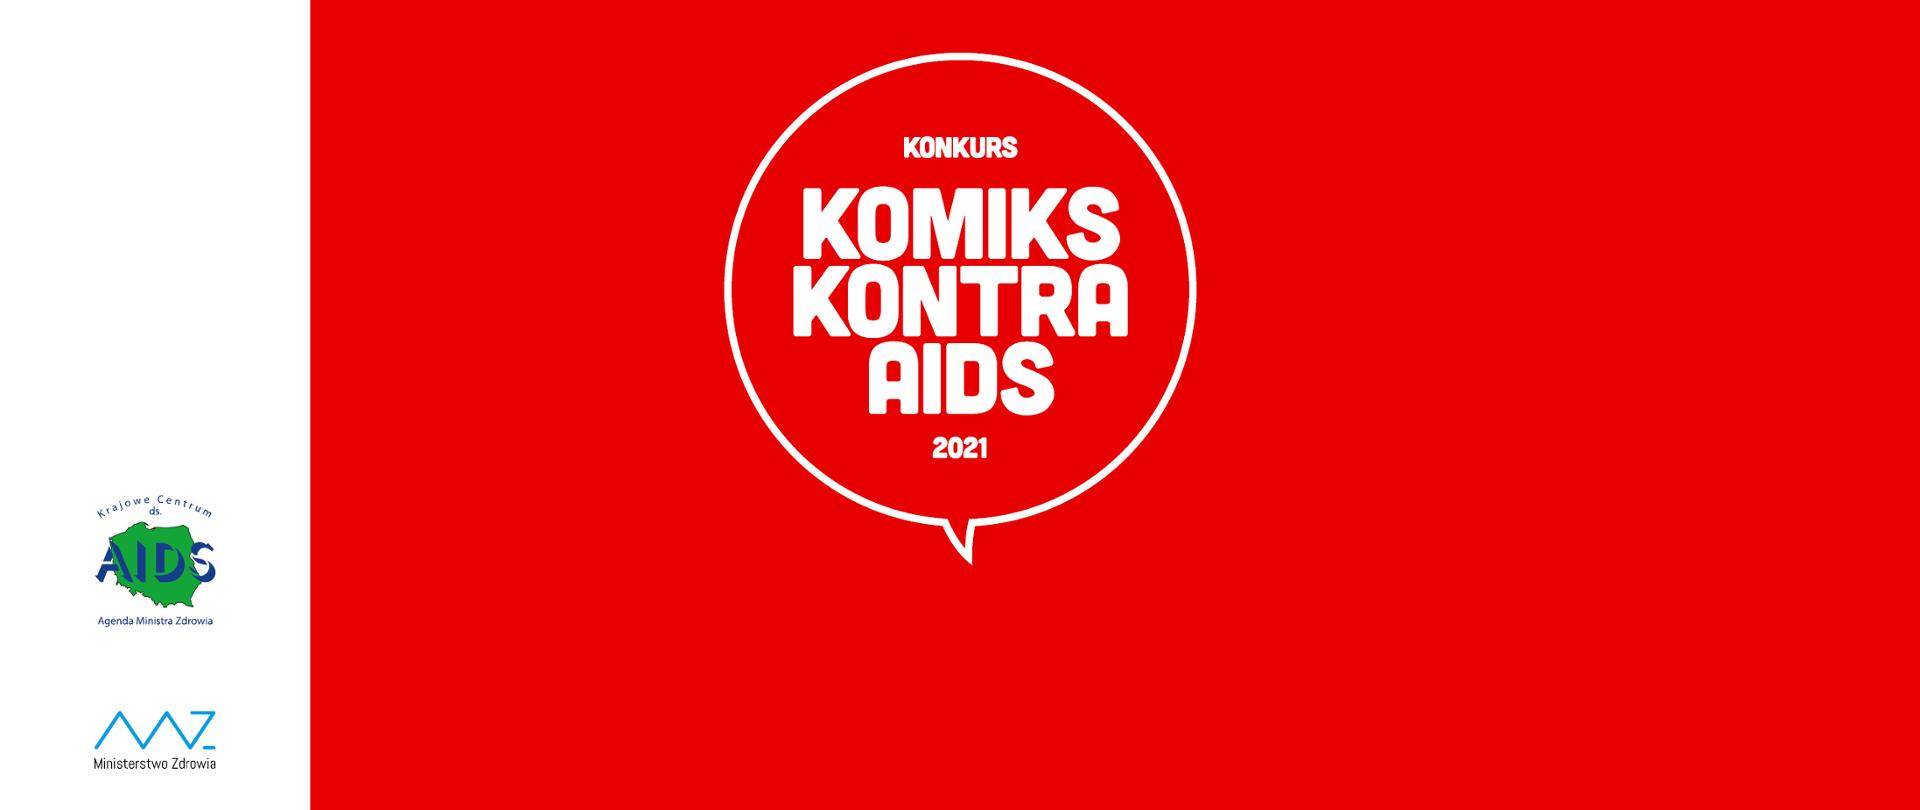 Czerwona grafika, w środku biały dymek z napisem: "Konkurs KOMIKS KONTRA AIDS 2021